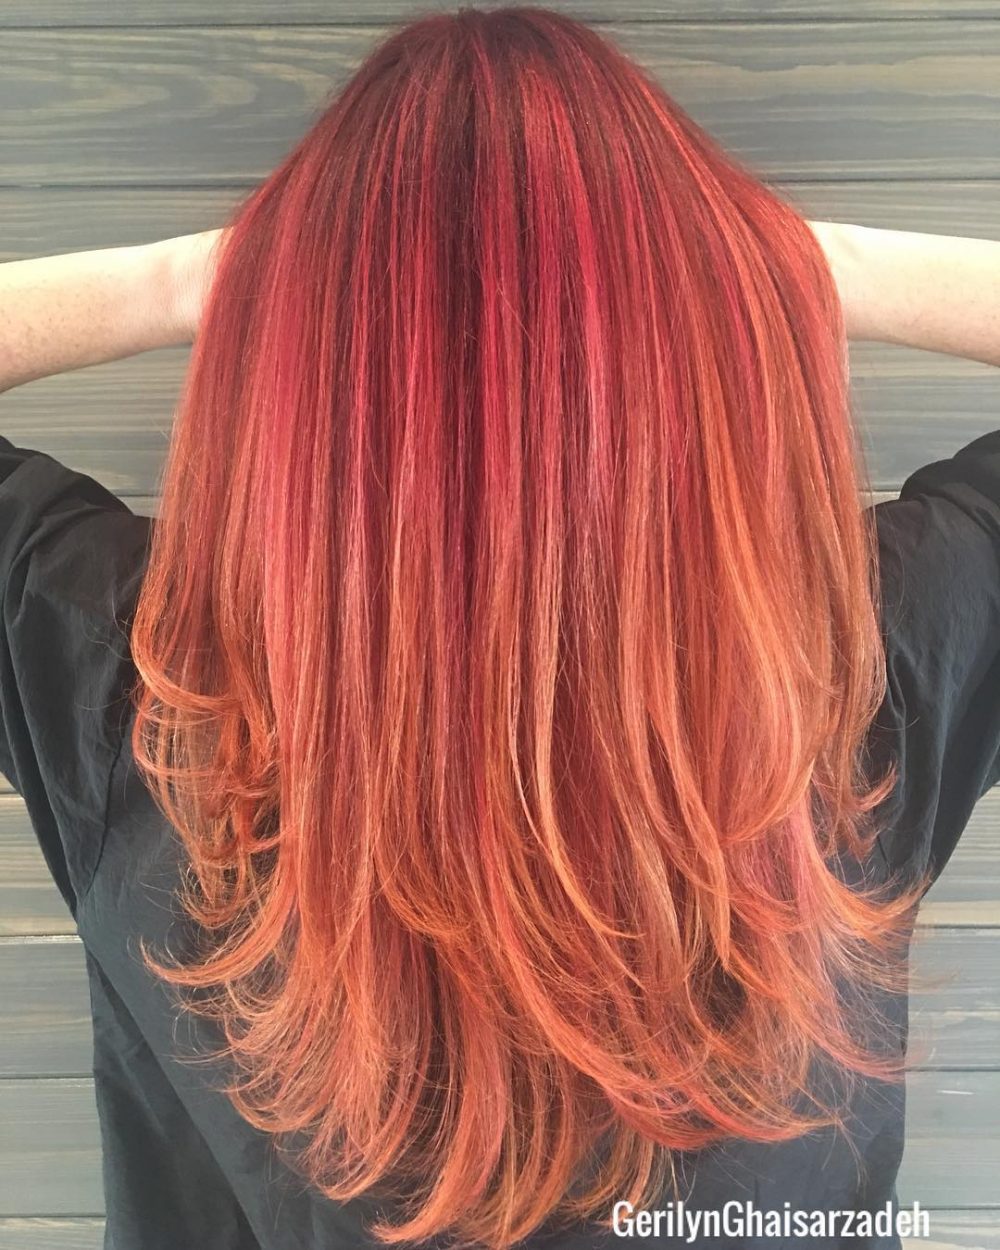 Peachy Pink Undertones on Red Hair